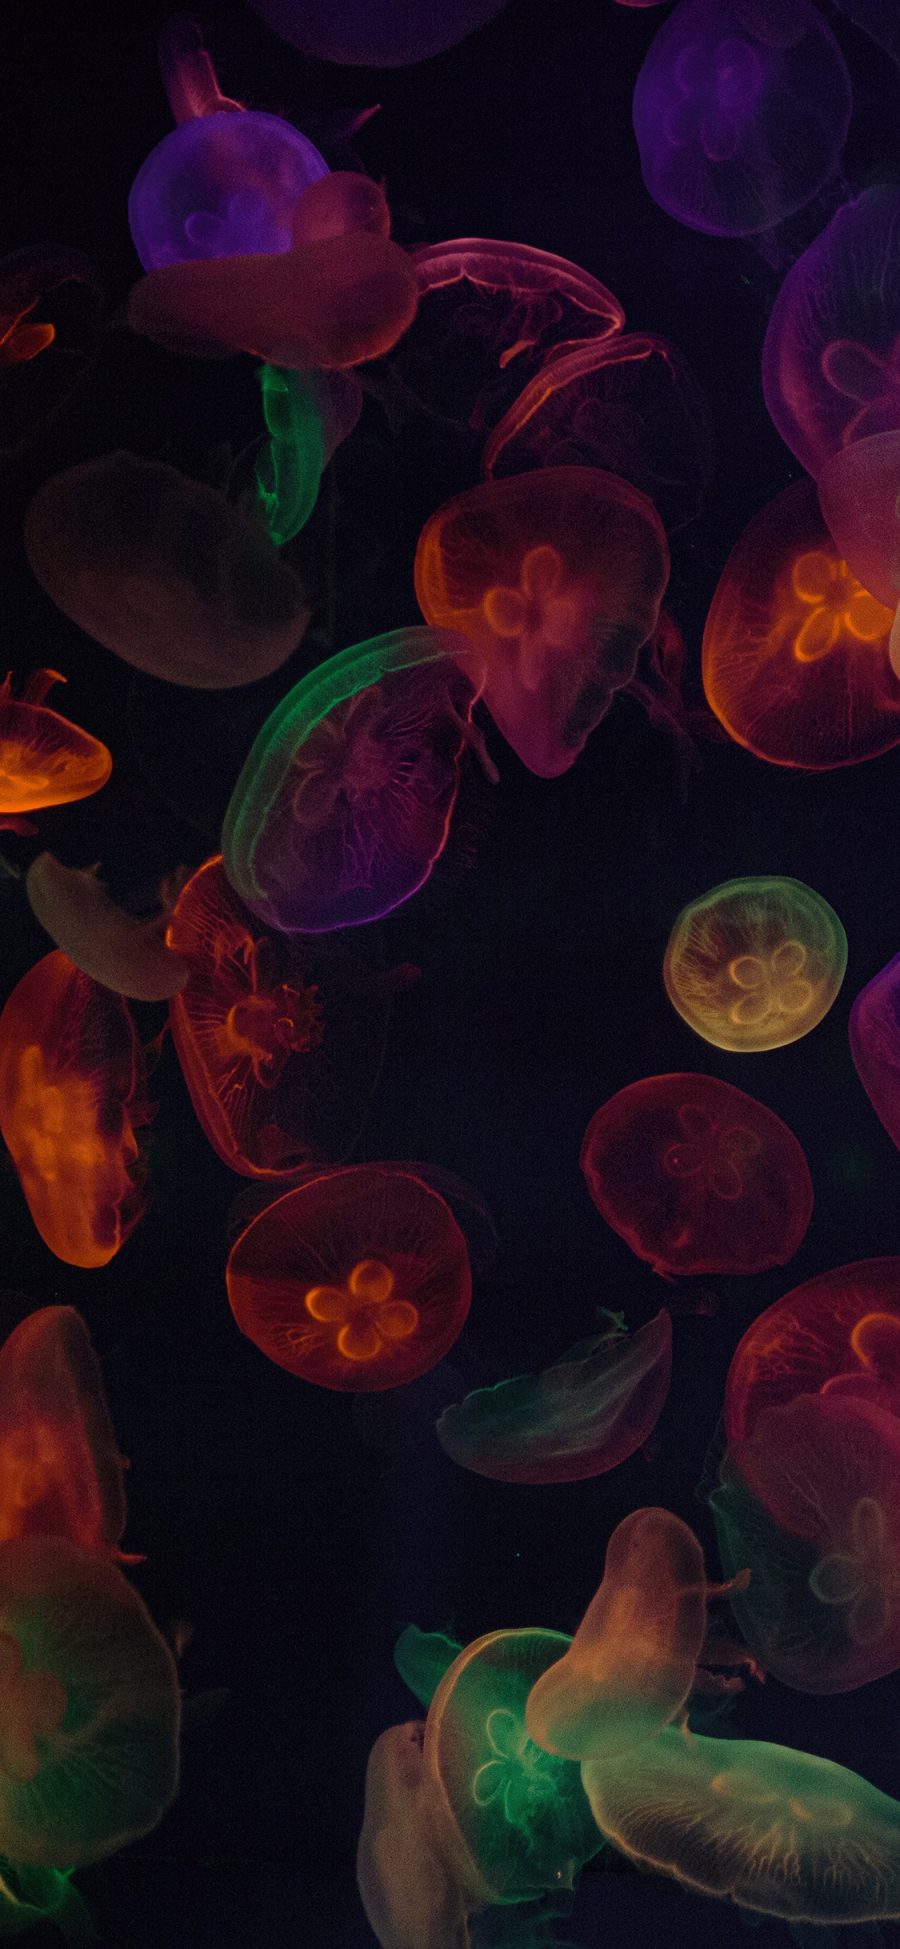 [2436×1125]水母 灯光 透明 密集 苹果手机壁纸图片